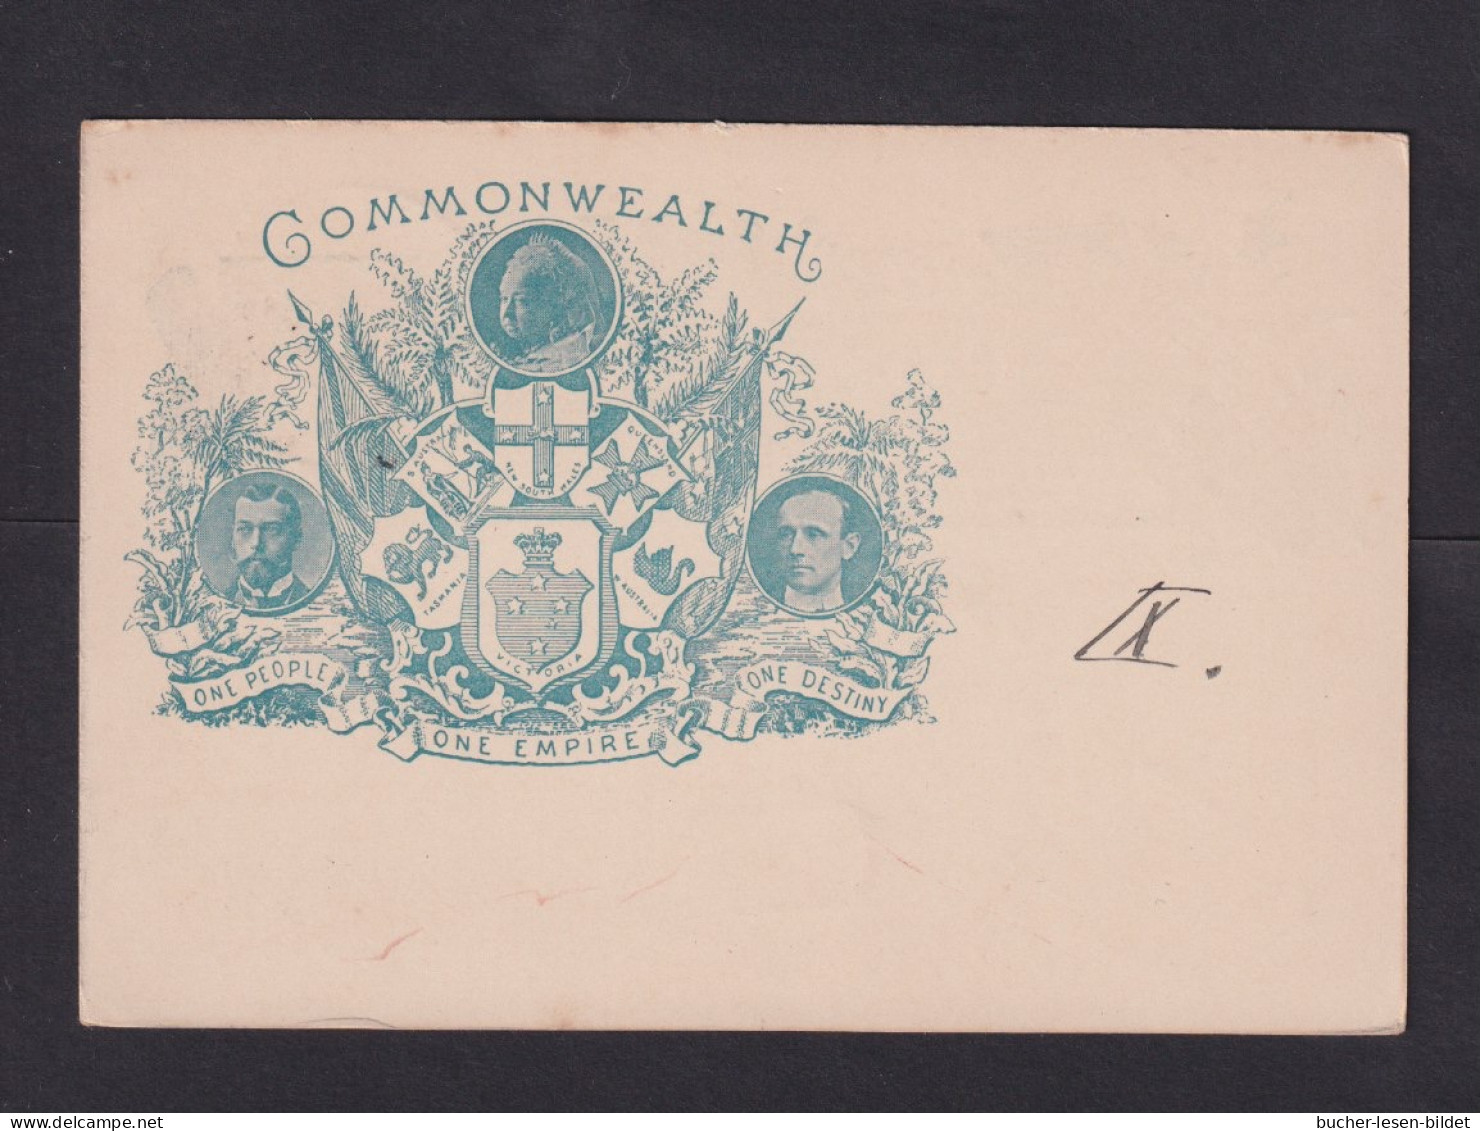 1901 - 1 P. Sonder-Ganzsache (P 23) Gebraucht In Melbourne - Briefe U. Dokumente